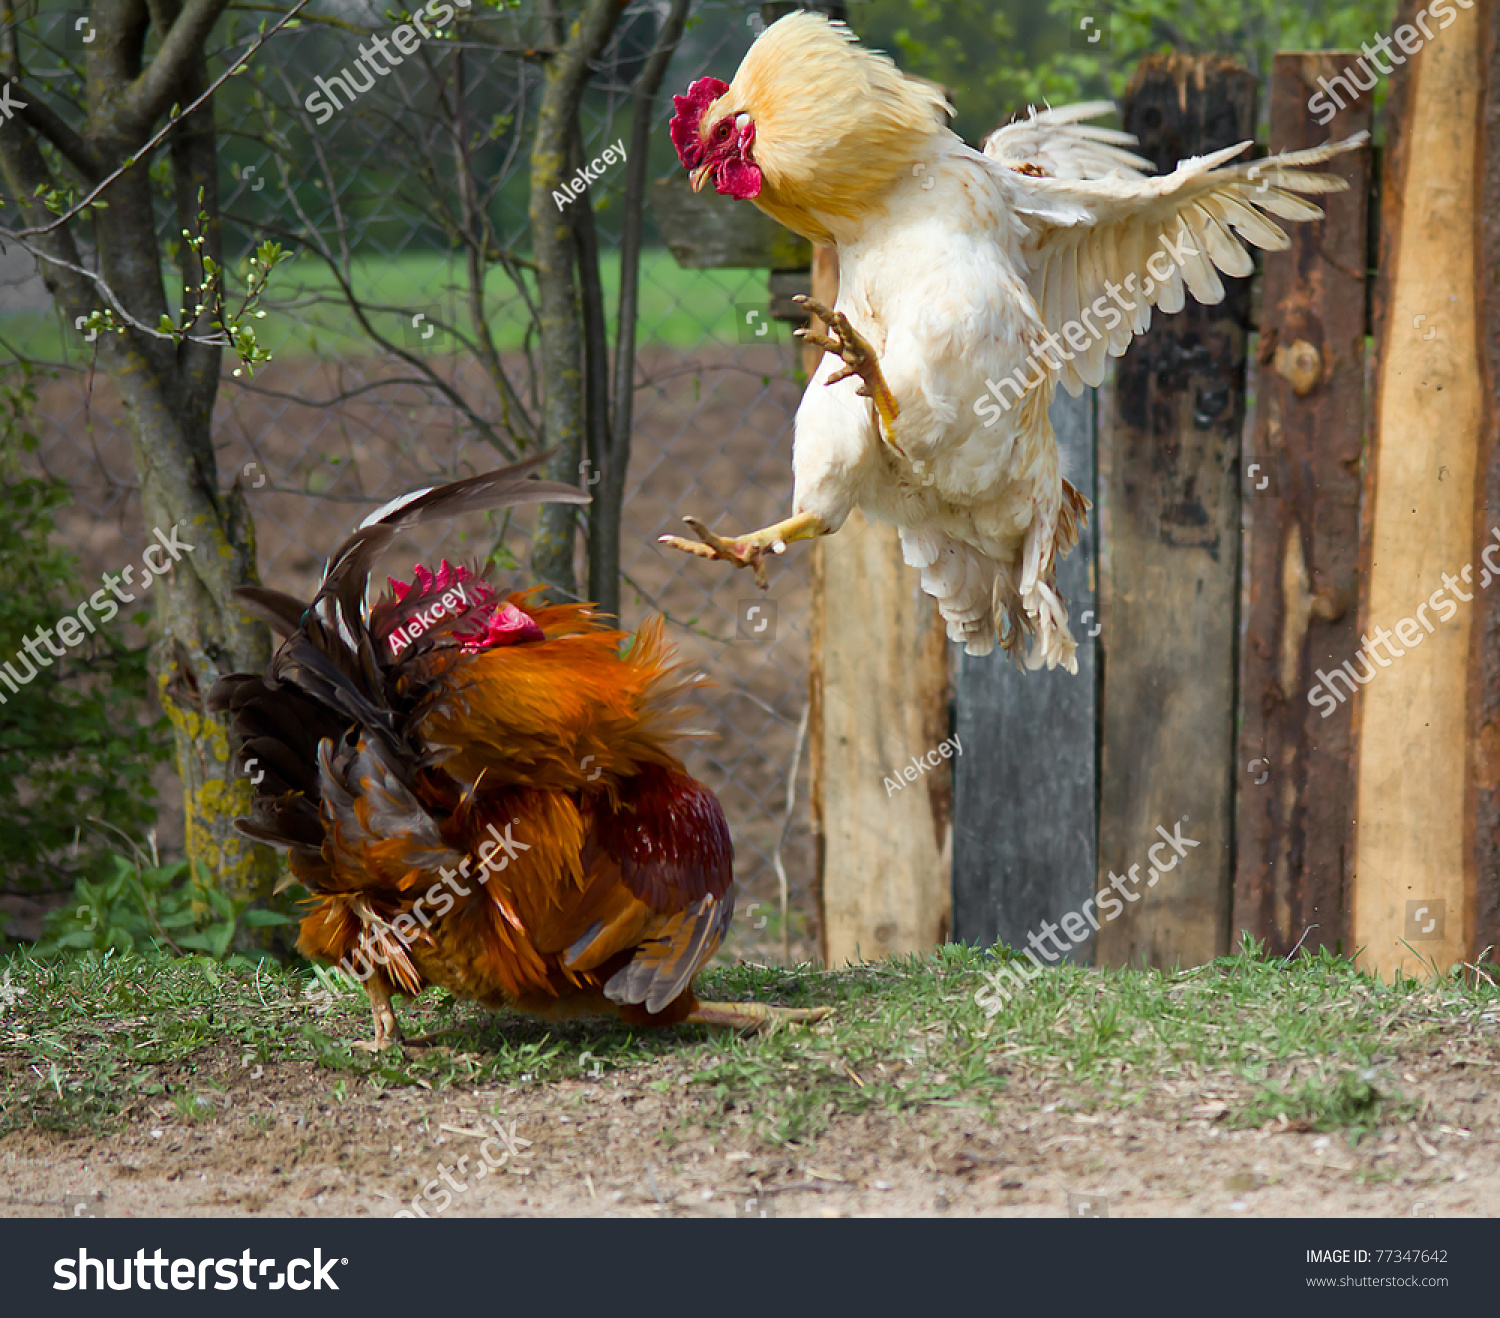 鸡打架_哔哩哔哩_bilibili